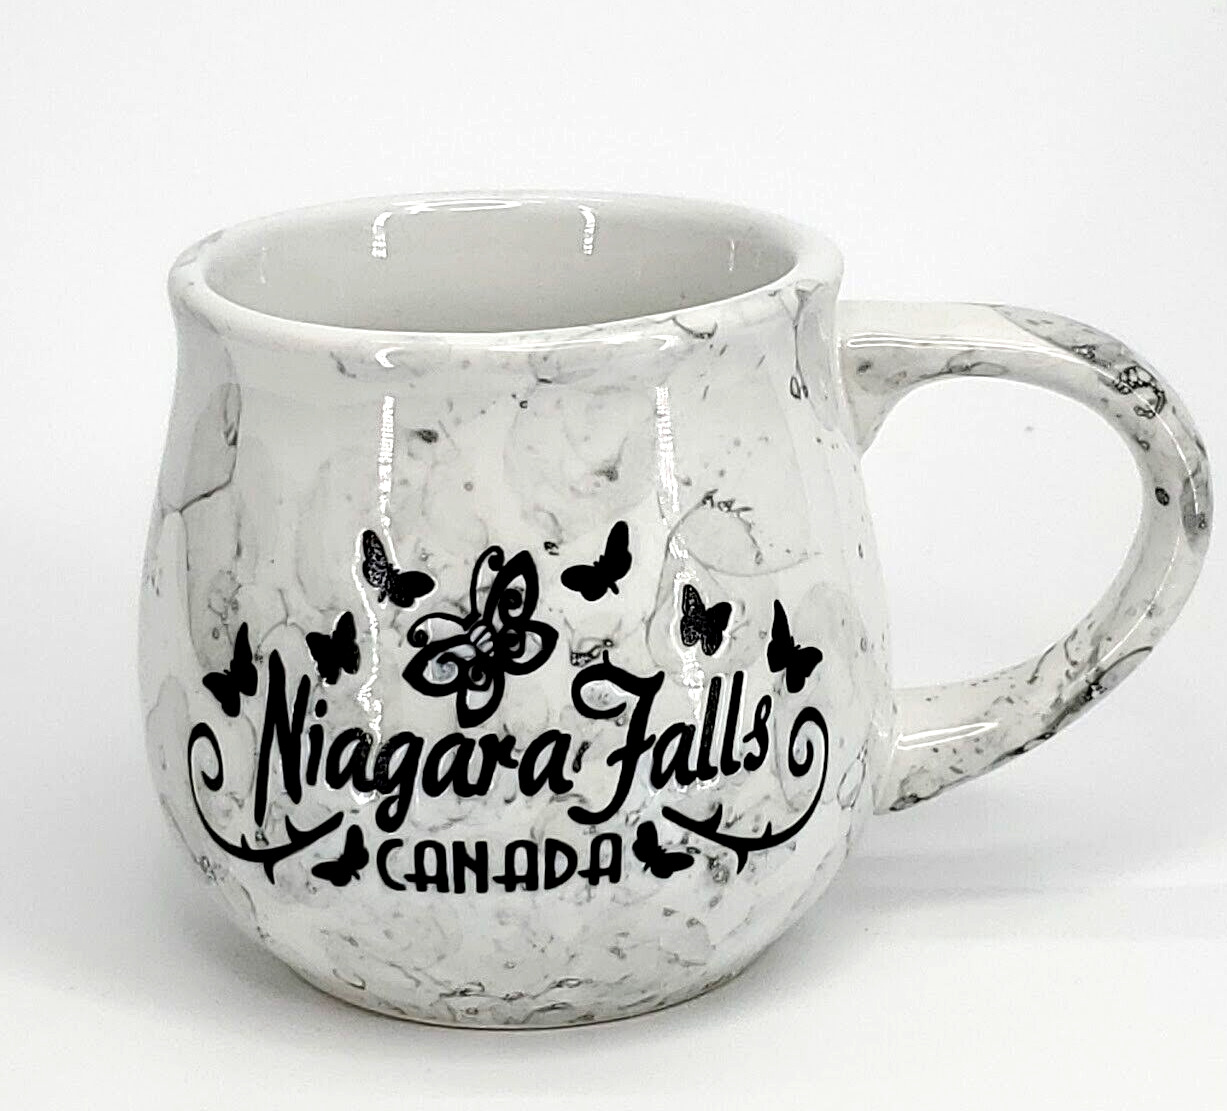 Niagara Falls Canada Mug Cup New Marble Design 12 oz Graphic Collectible